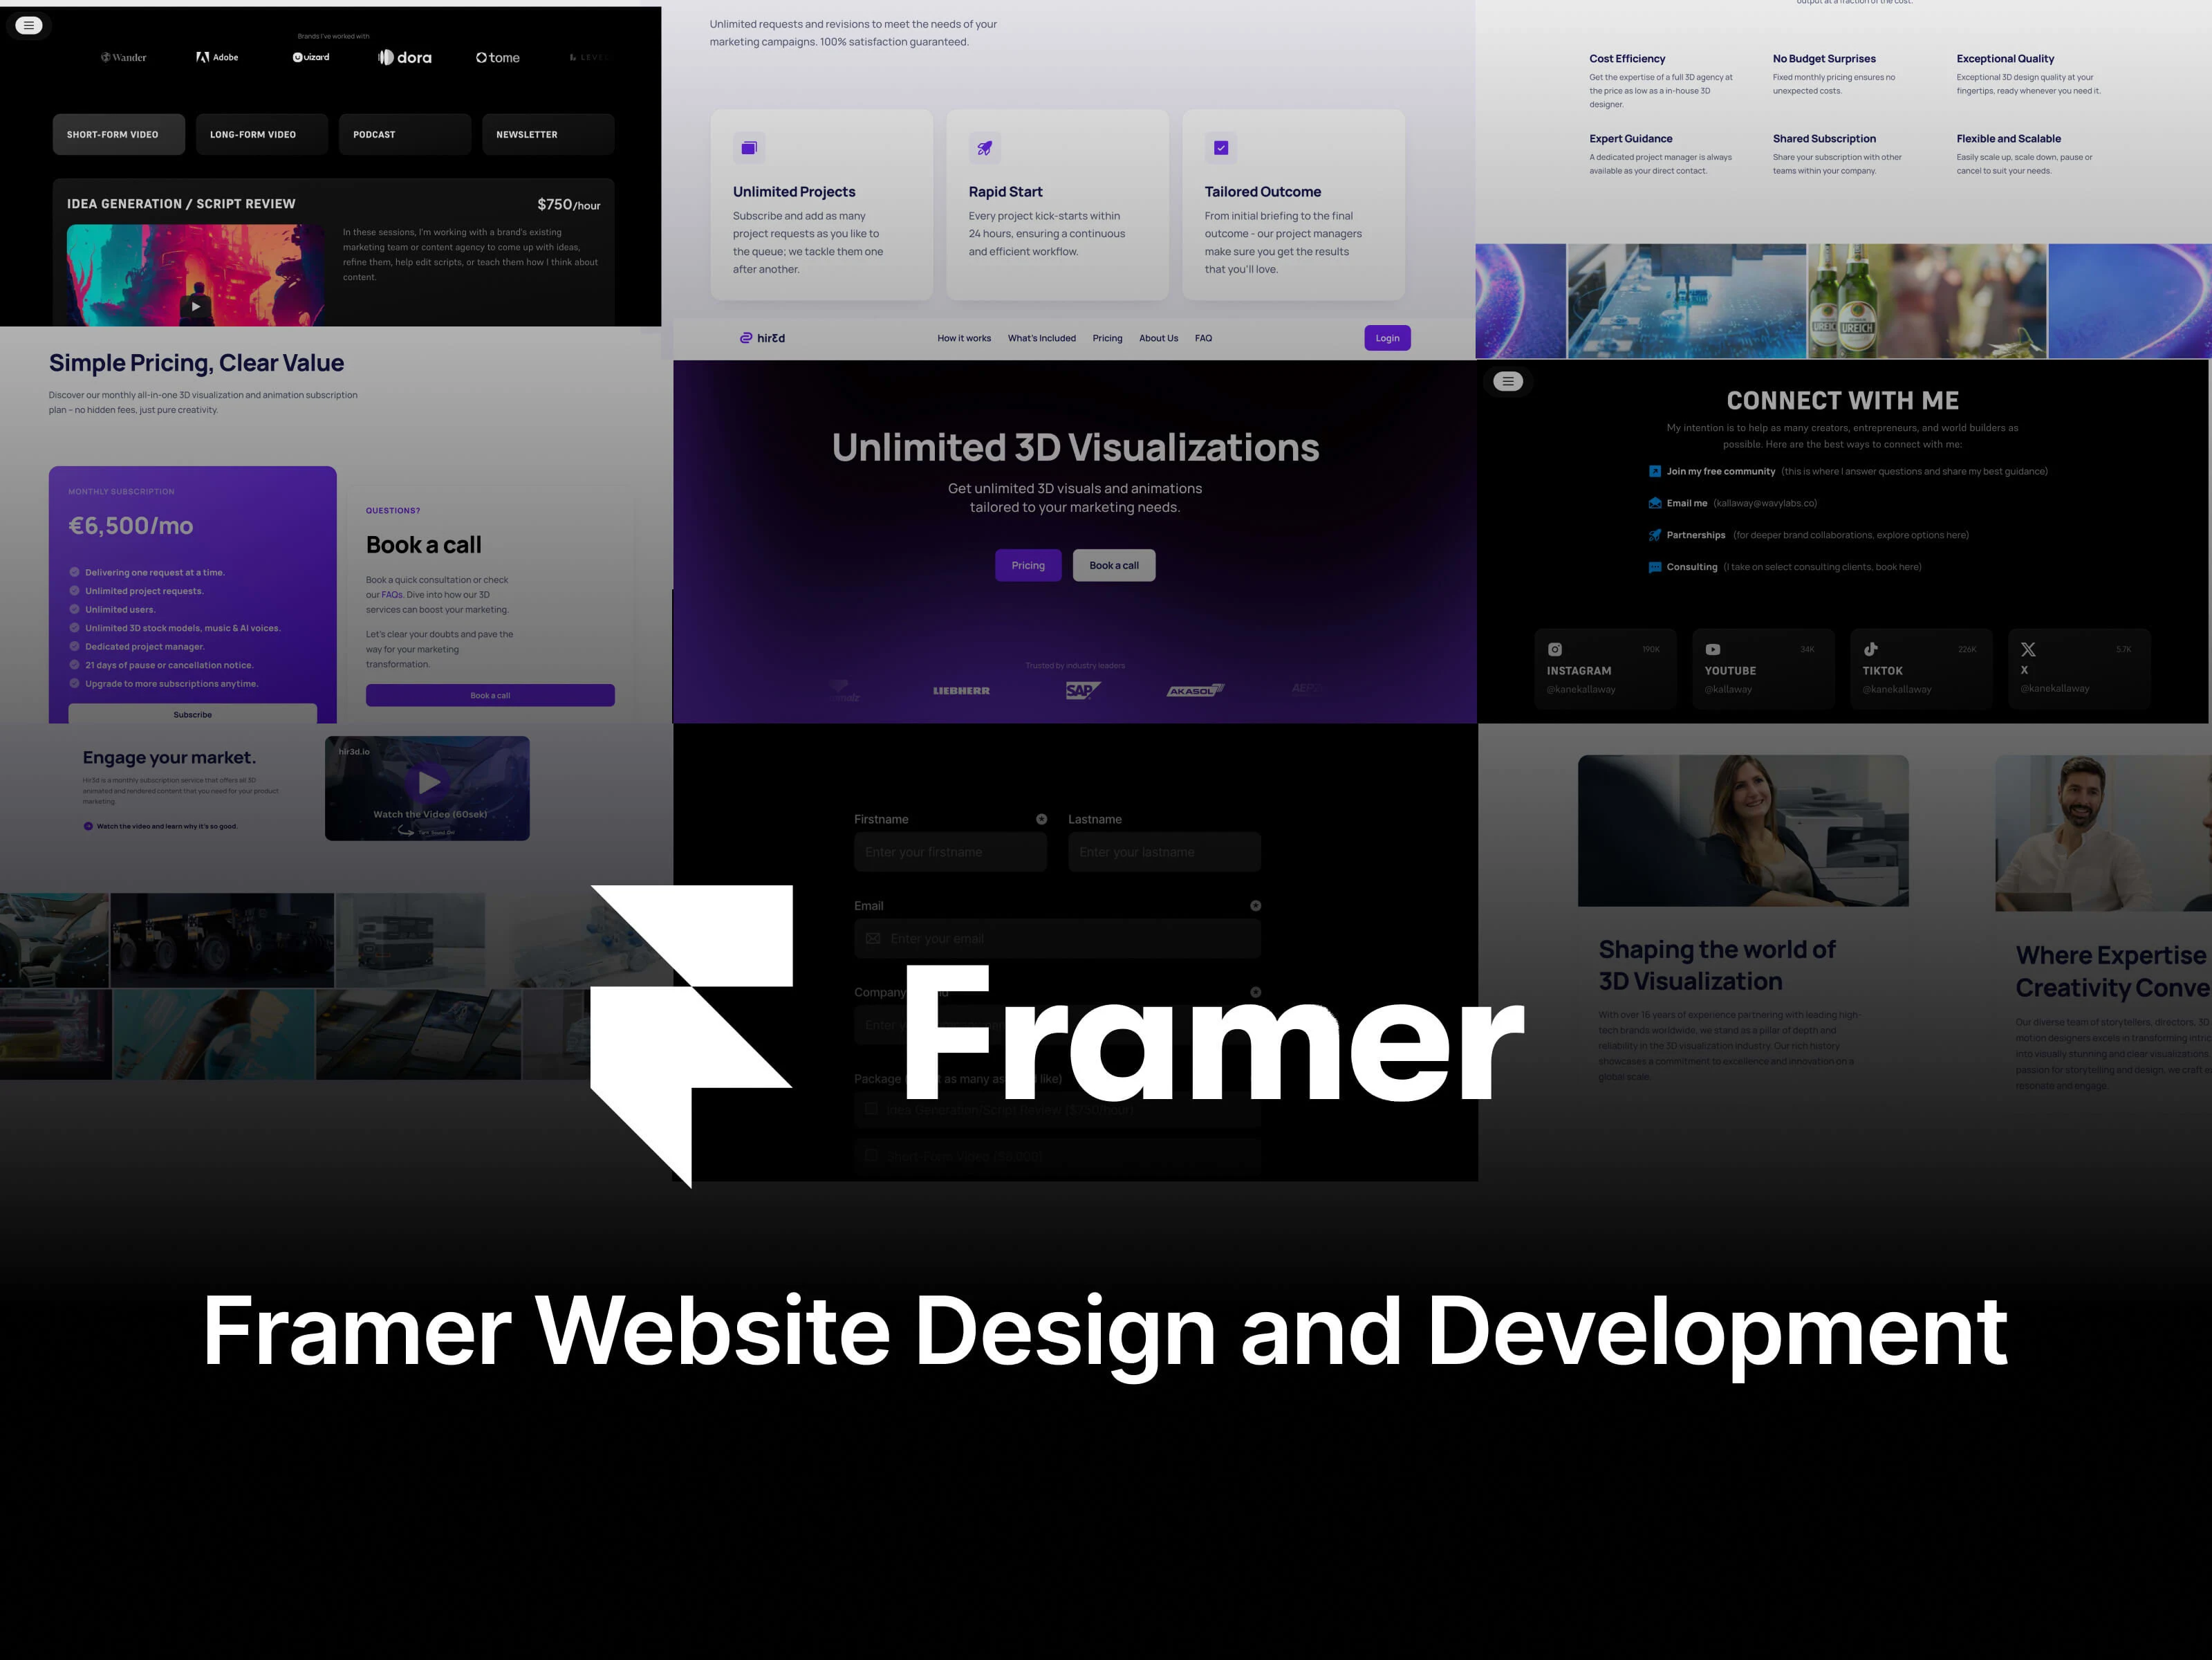 Framer Website Design & Development, a service by Tristan Owen